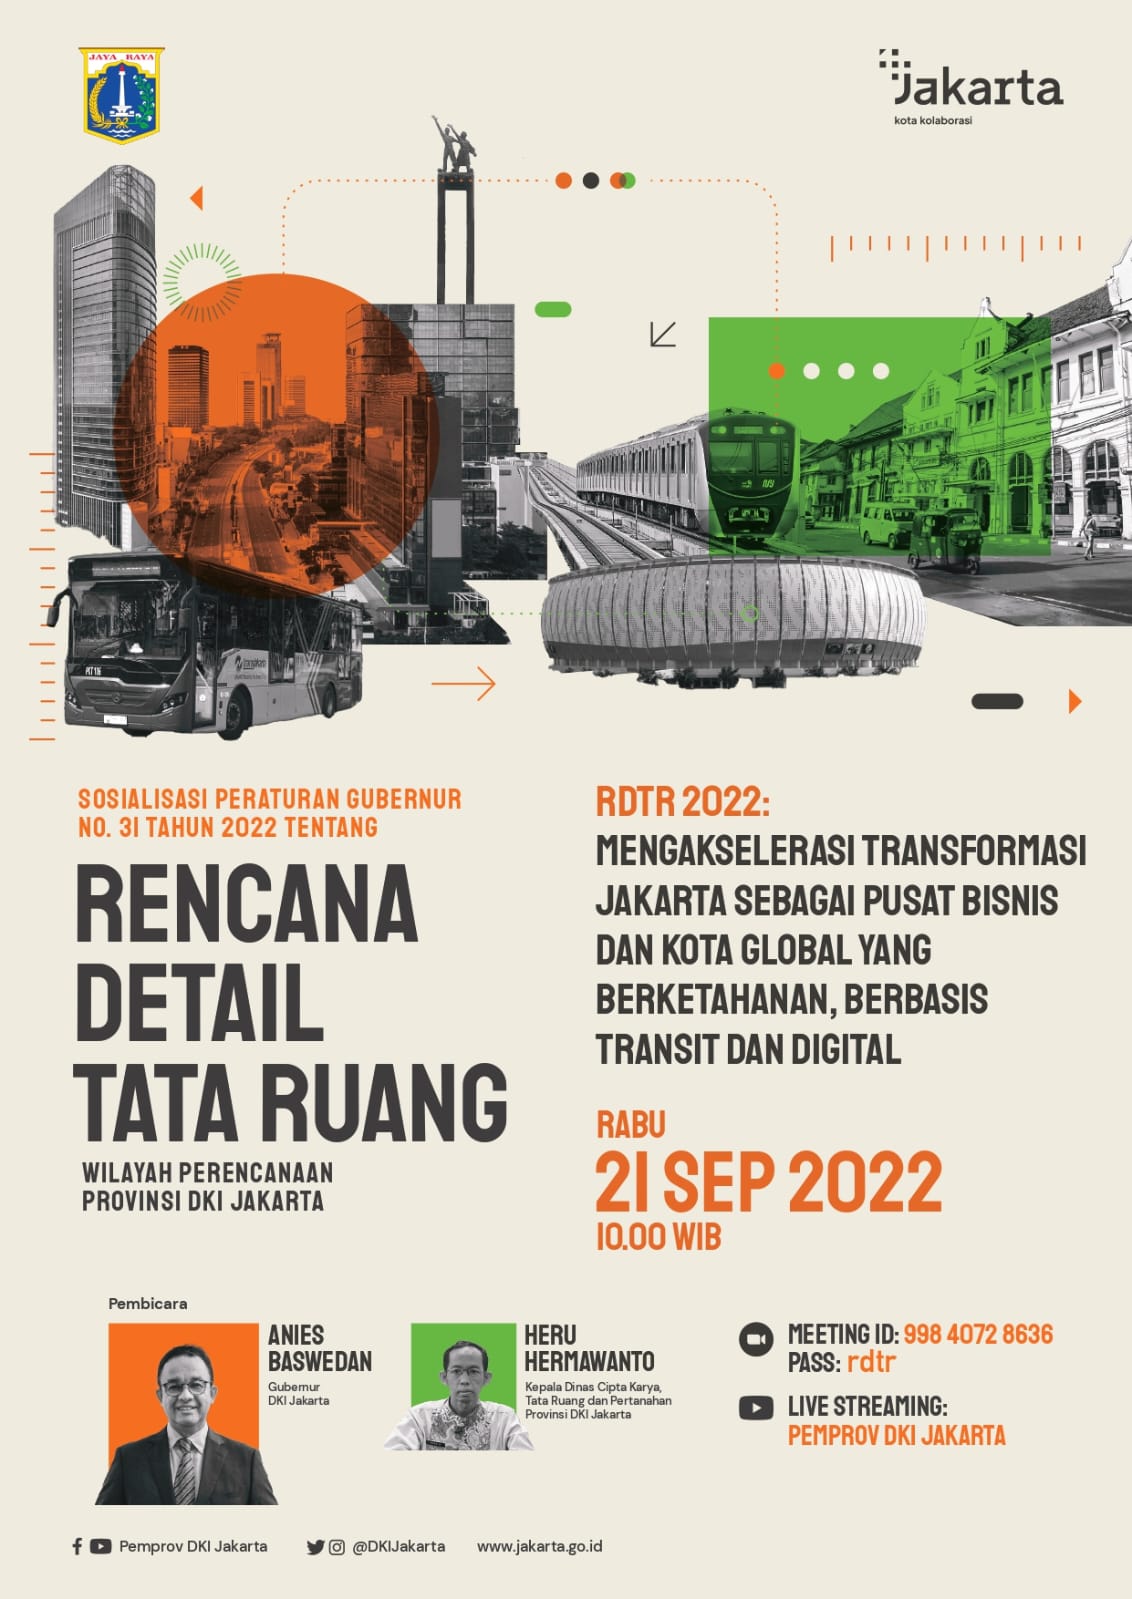 Mengakselerasi Transformasi Jakarta sebagai Pusat Bisnis dan Kota Global yang Berketahanan, Berbasis Transit dan Digital